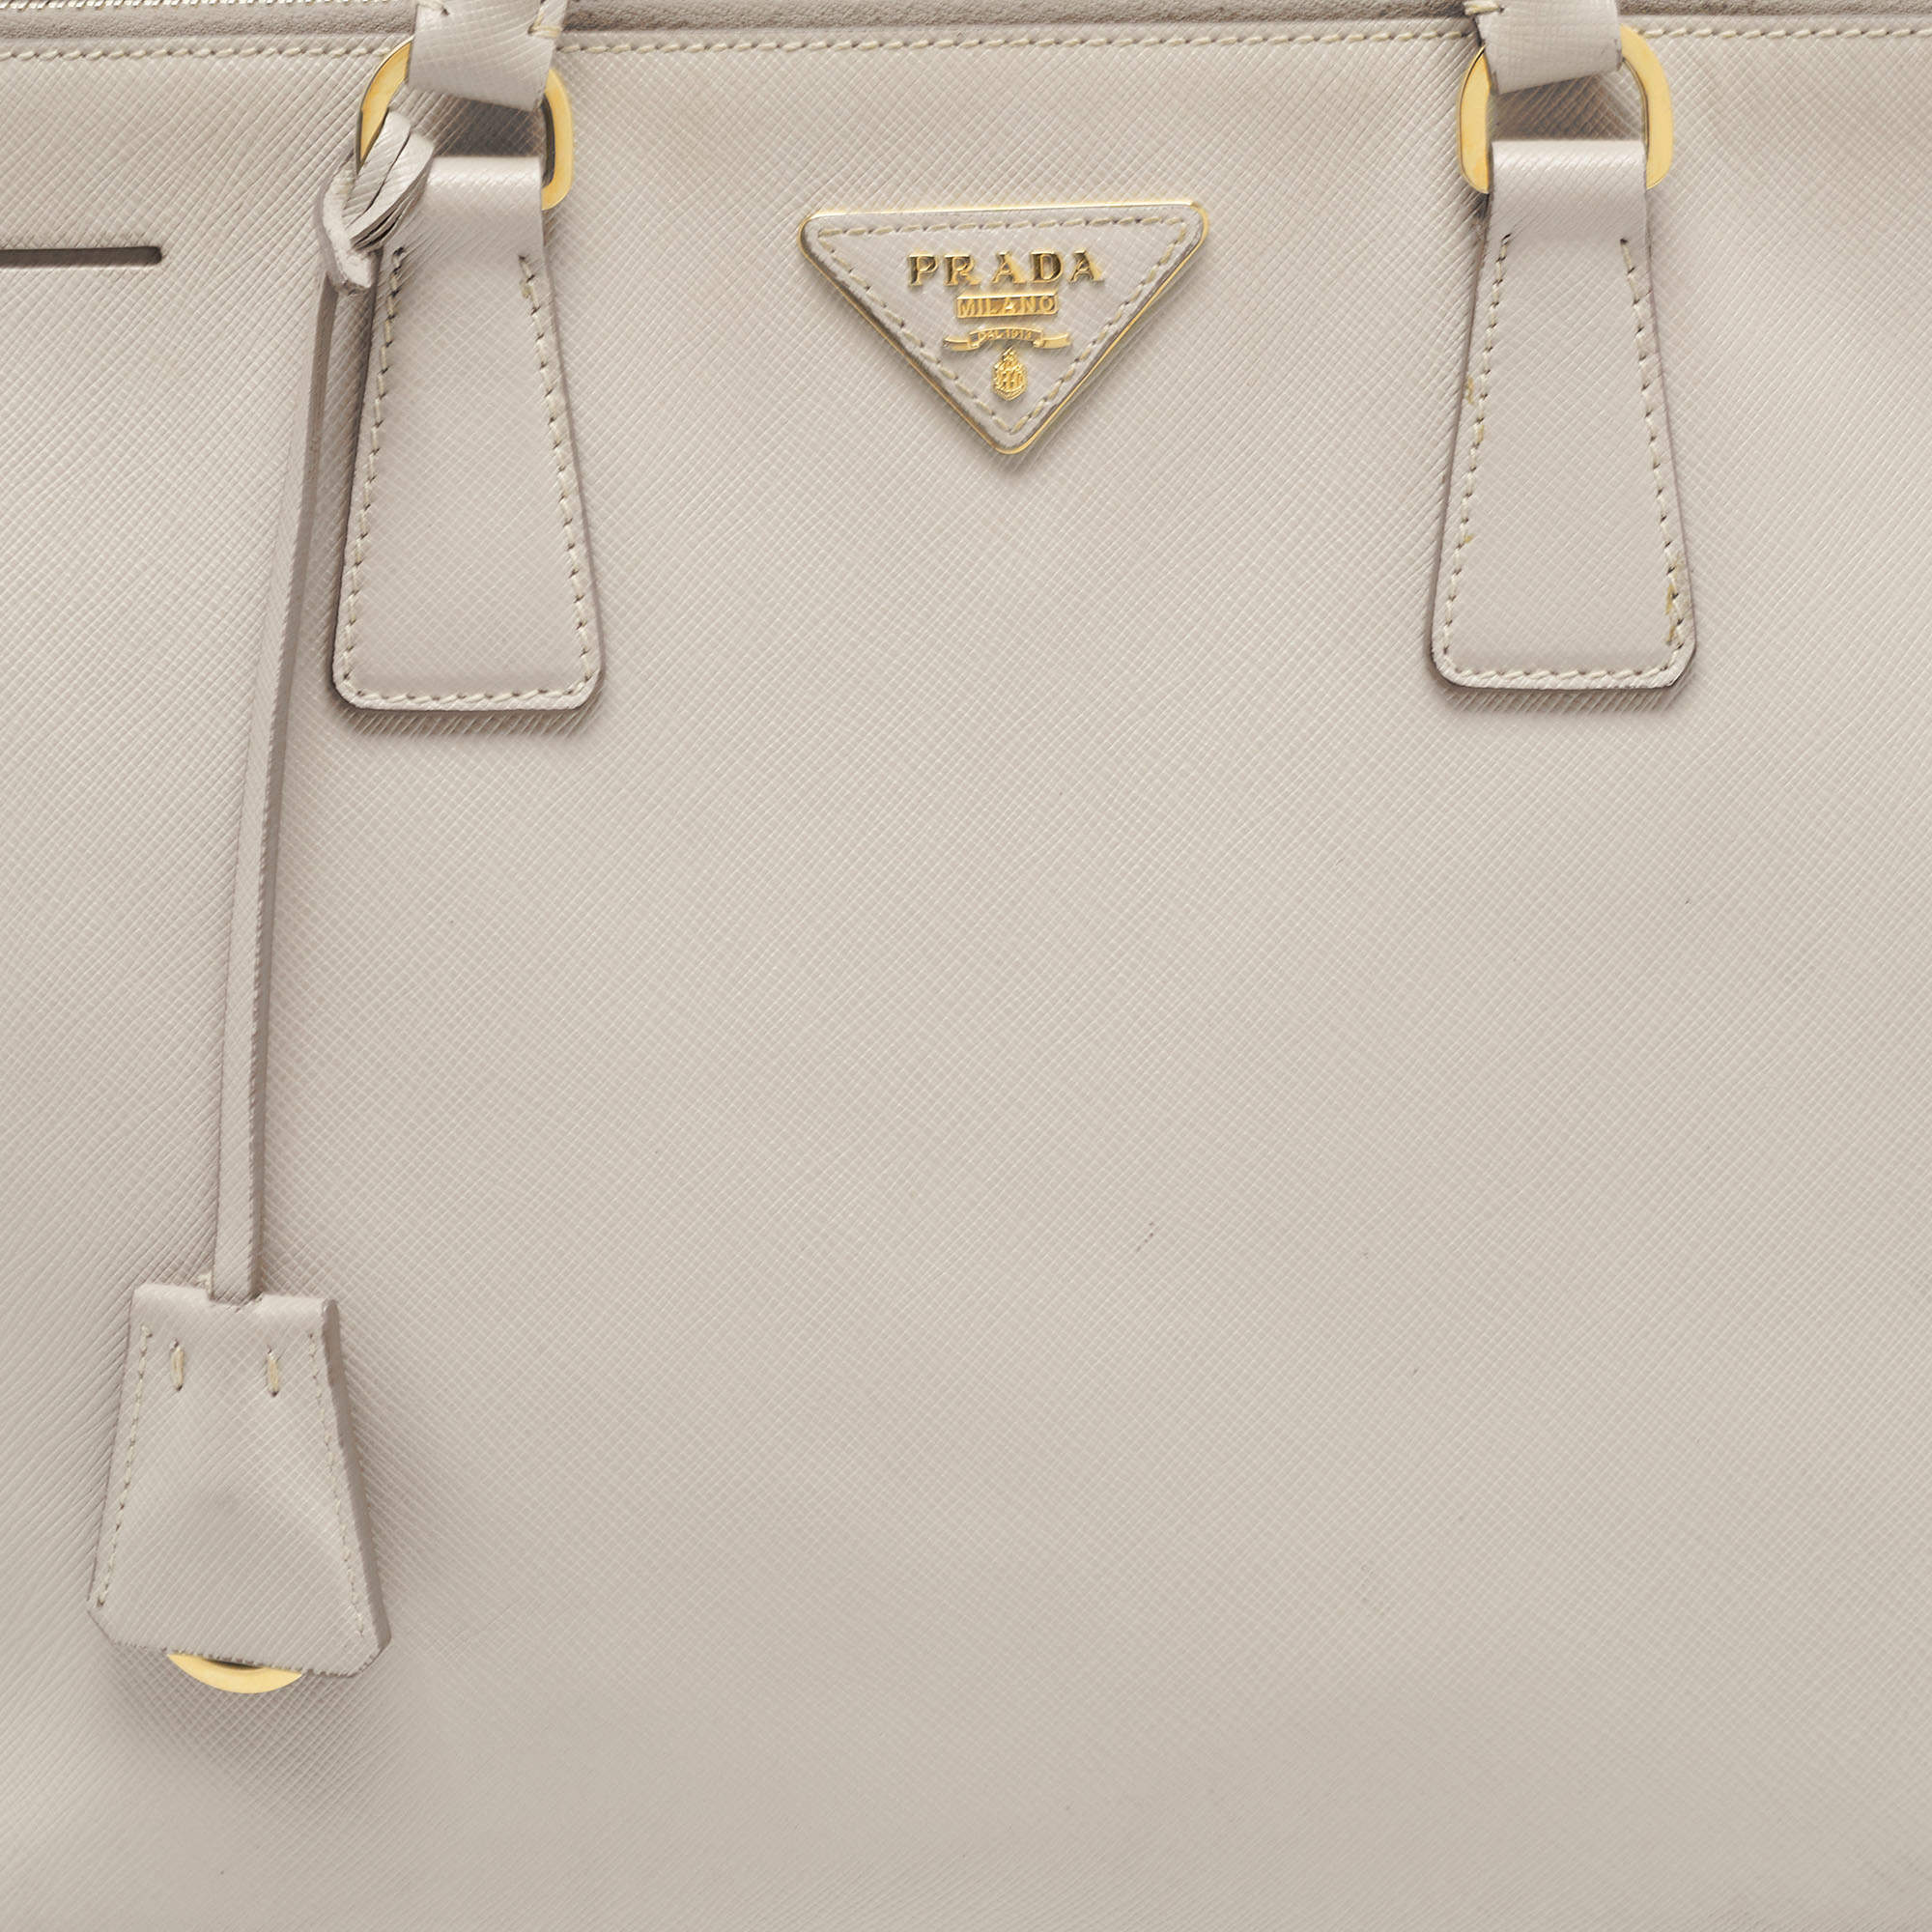 Prada Saffiano Lux Medium Galleria Double Zip Tote w/ Strap - Grey Totes,  Handbags - PRA867220